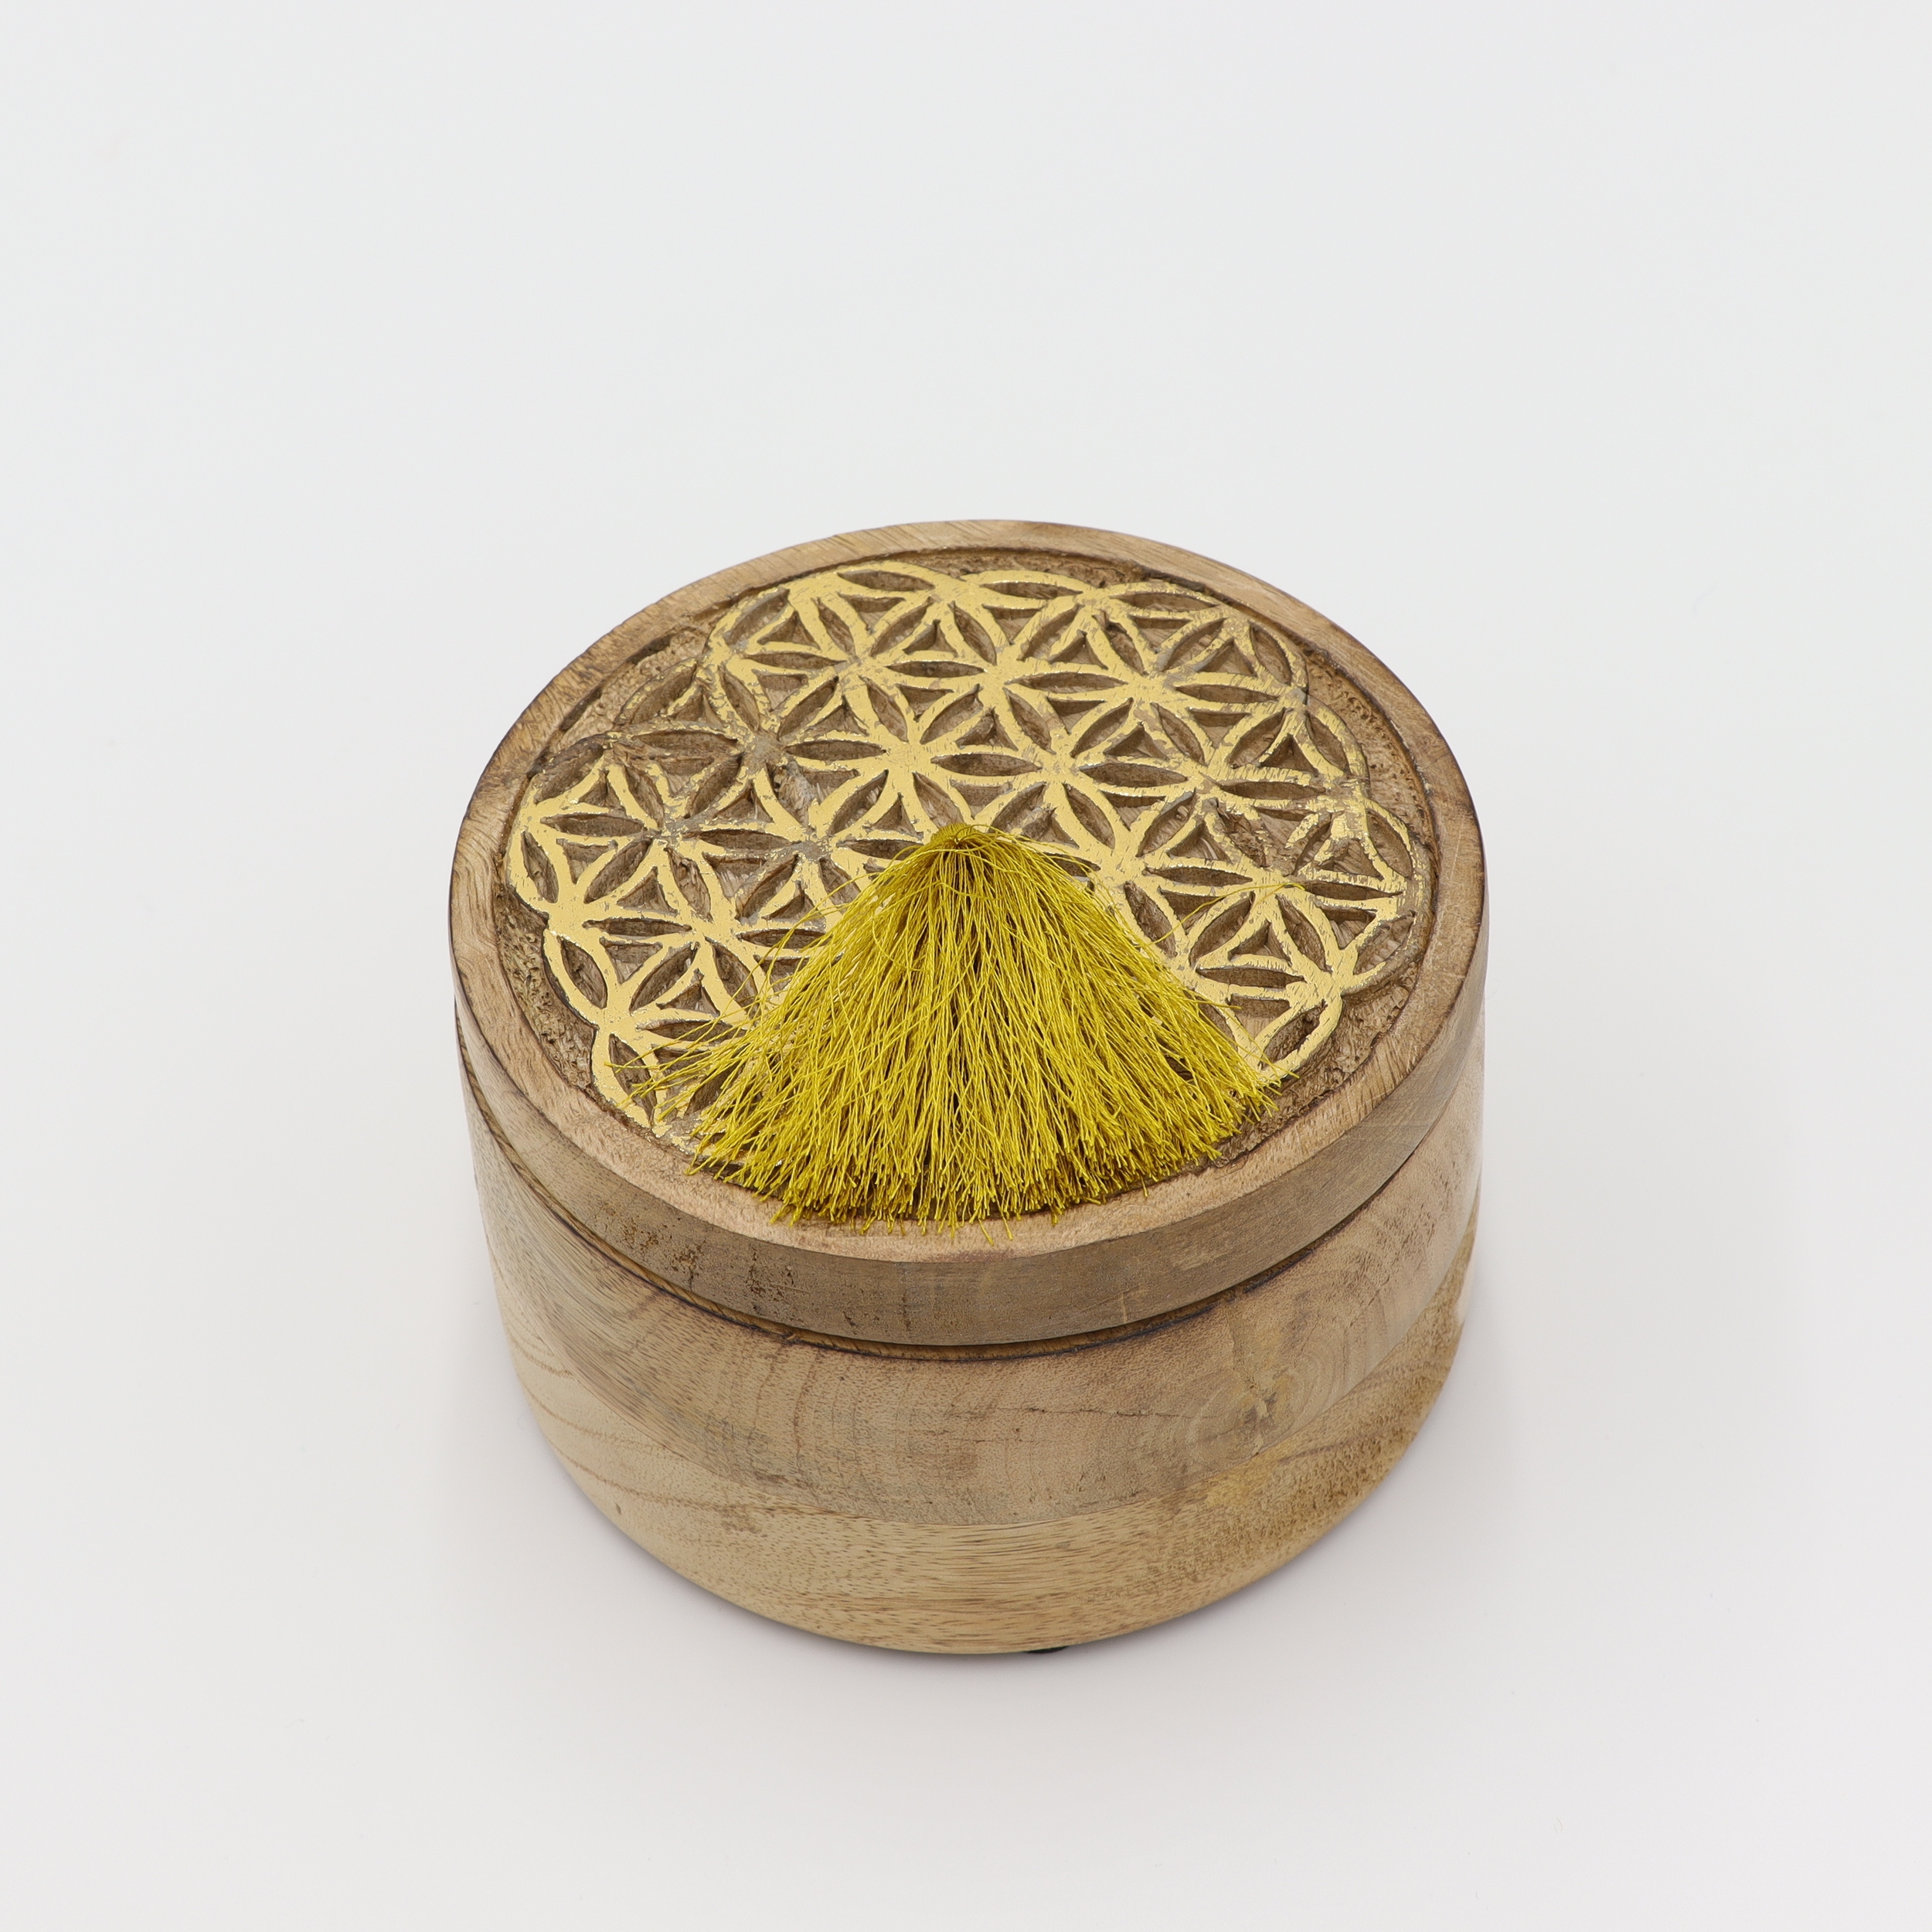 Dose aus Holz - Blume des Lebens - goldfarbene Schnitzerei - runder abnehmbarer Deckel mit gelben Bommel - L